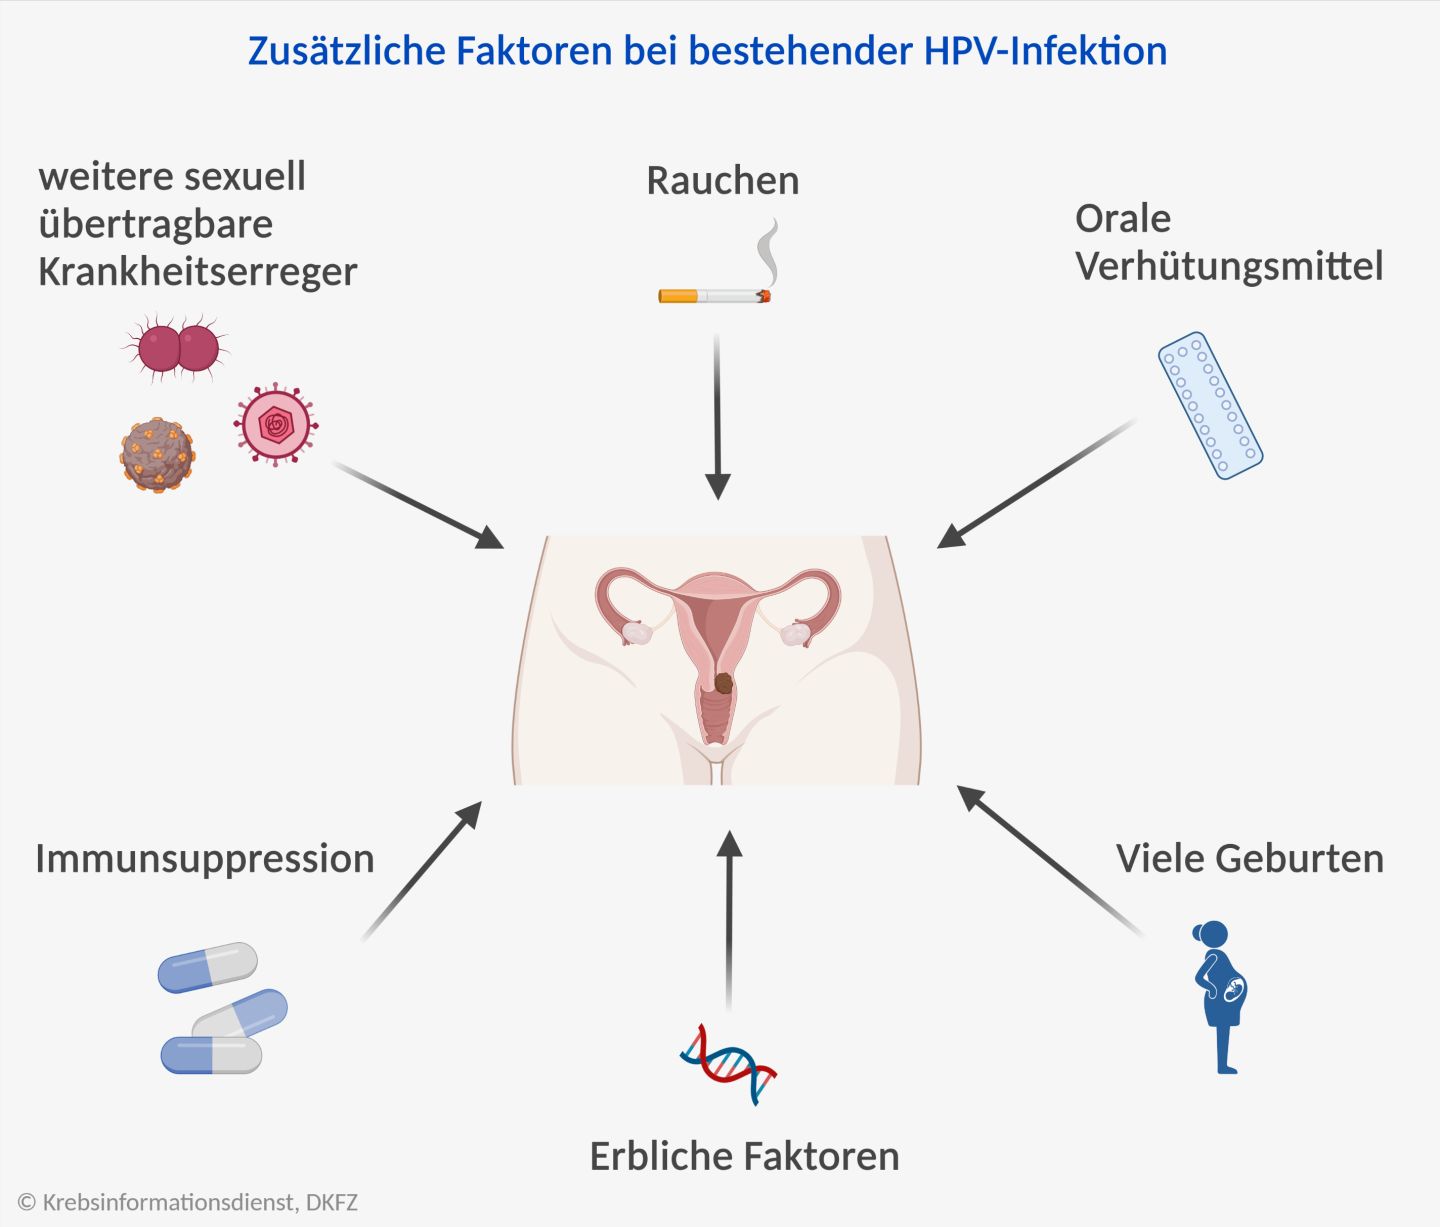 Ko-Risikofaktoren für Gebärmutterhalskrebs bei einer bestehenden HPV-Infektion: Rauchen, Pille, viele Geburten, Immunsuppression, Infektionen, Vererbung